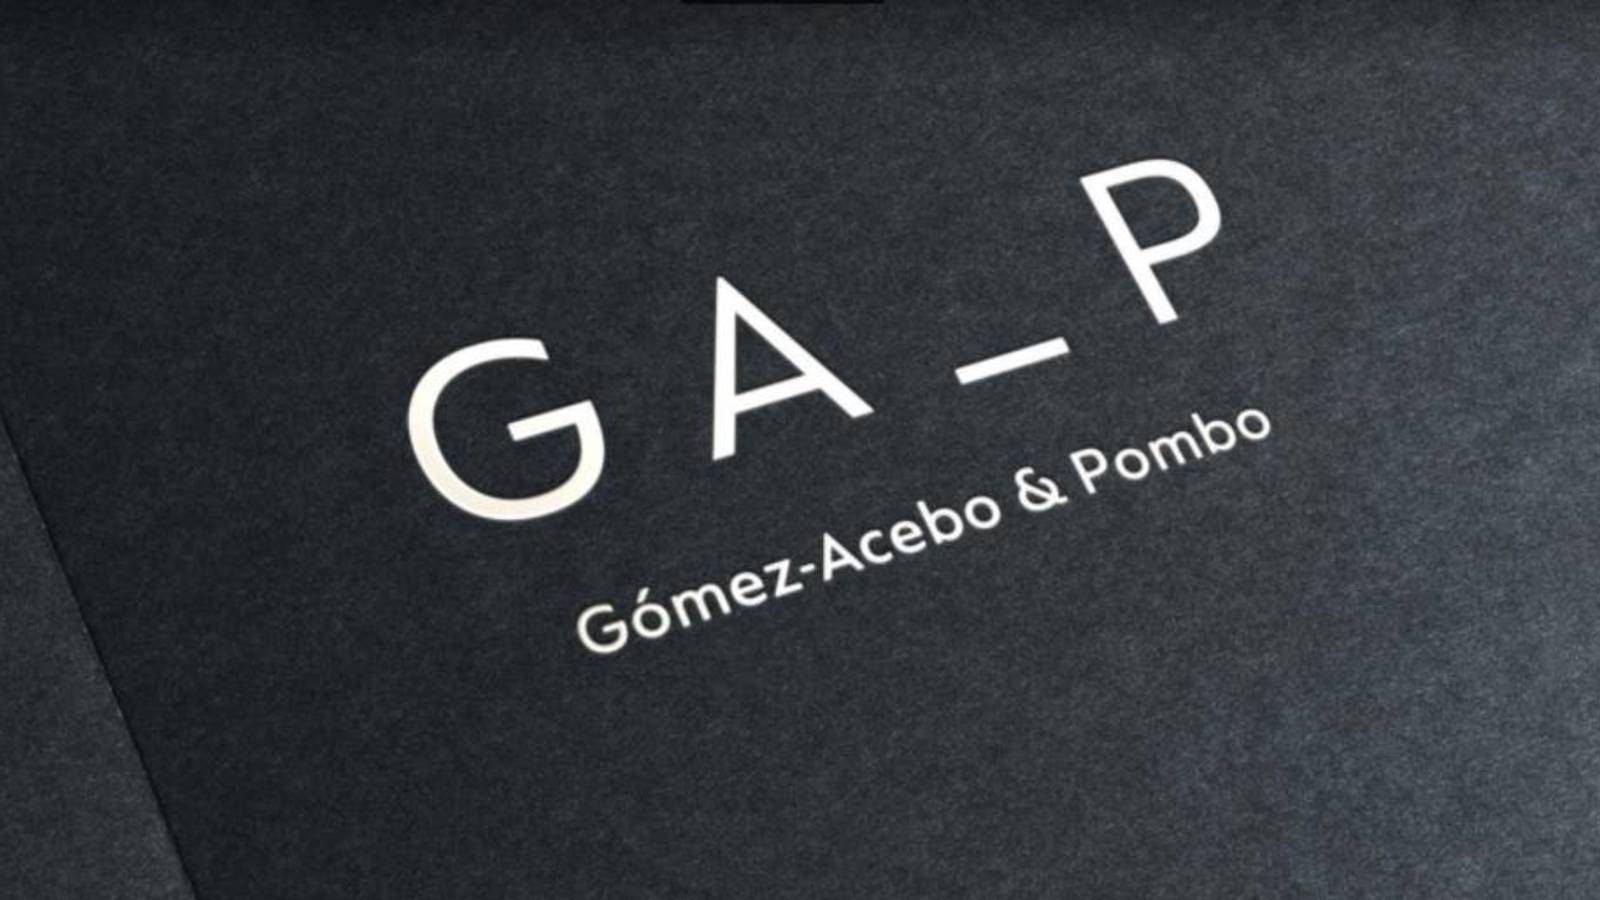 La criptomoneda del bufete Gómez - Acebo & Pombo se utilizará para el pago de servicios legales y en la actualidad para actividades y obras benéficas